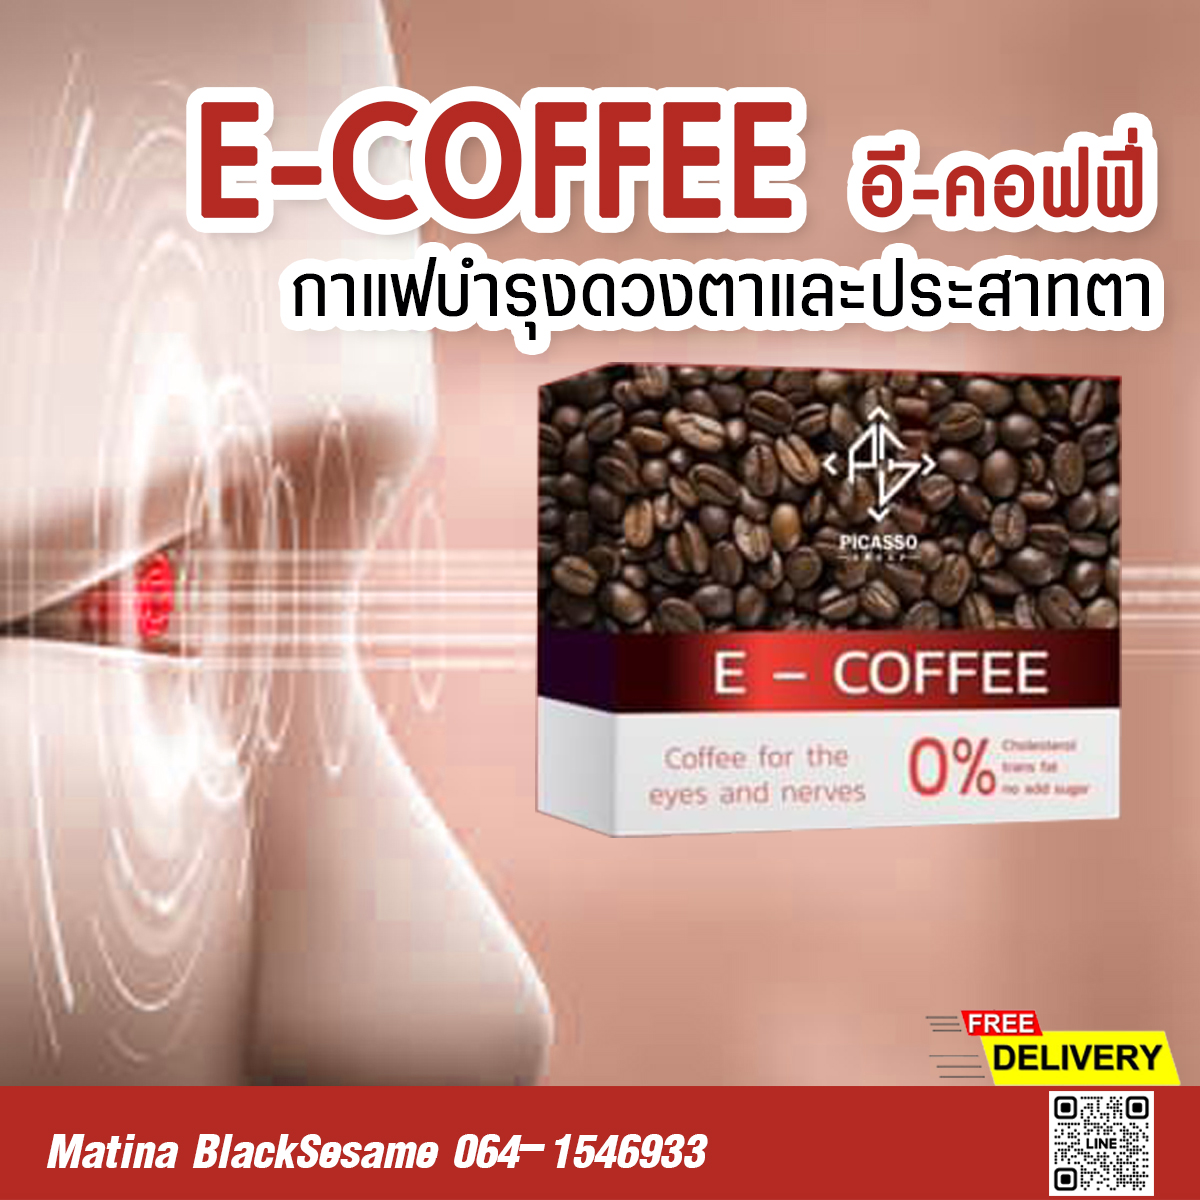 E-COFFEE กาแฟเพื่อสุขภาพดวงตาทั้งระบบ